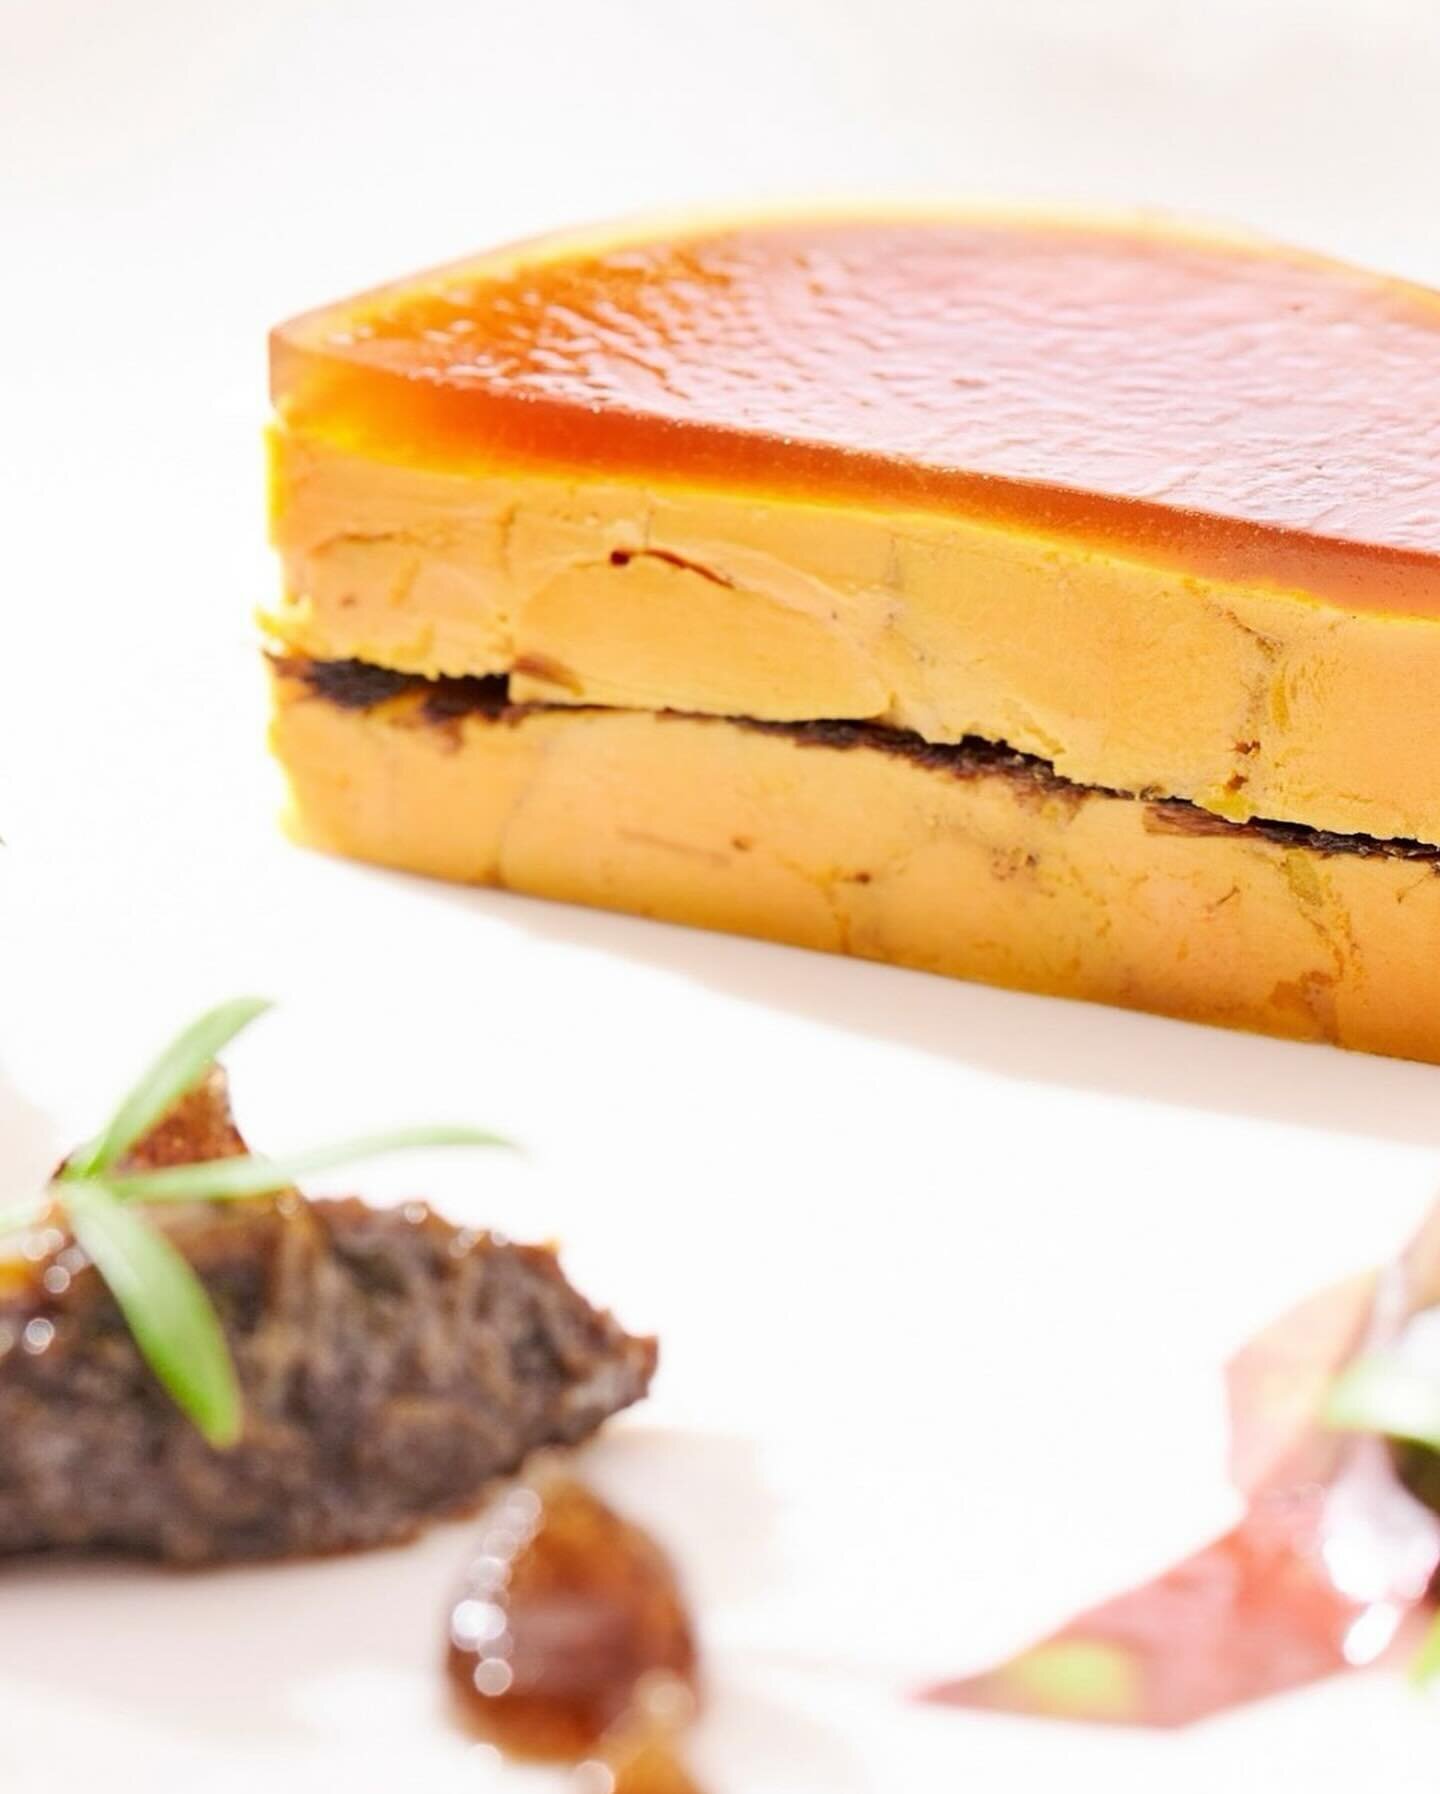 Retrouvez notre Vinaigre
Balsamique @xipisteretxekoa travaill&eacute; autour du foie gras par le Chef @bastien_soumoulou du restaurant 
@lareservesaintjeandeluz 🤩🌶️✨
Nos produits sublim&eacute;s par le talent des Chefs 🙌🙏
www.xipister-etxekoa.com